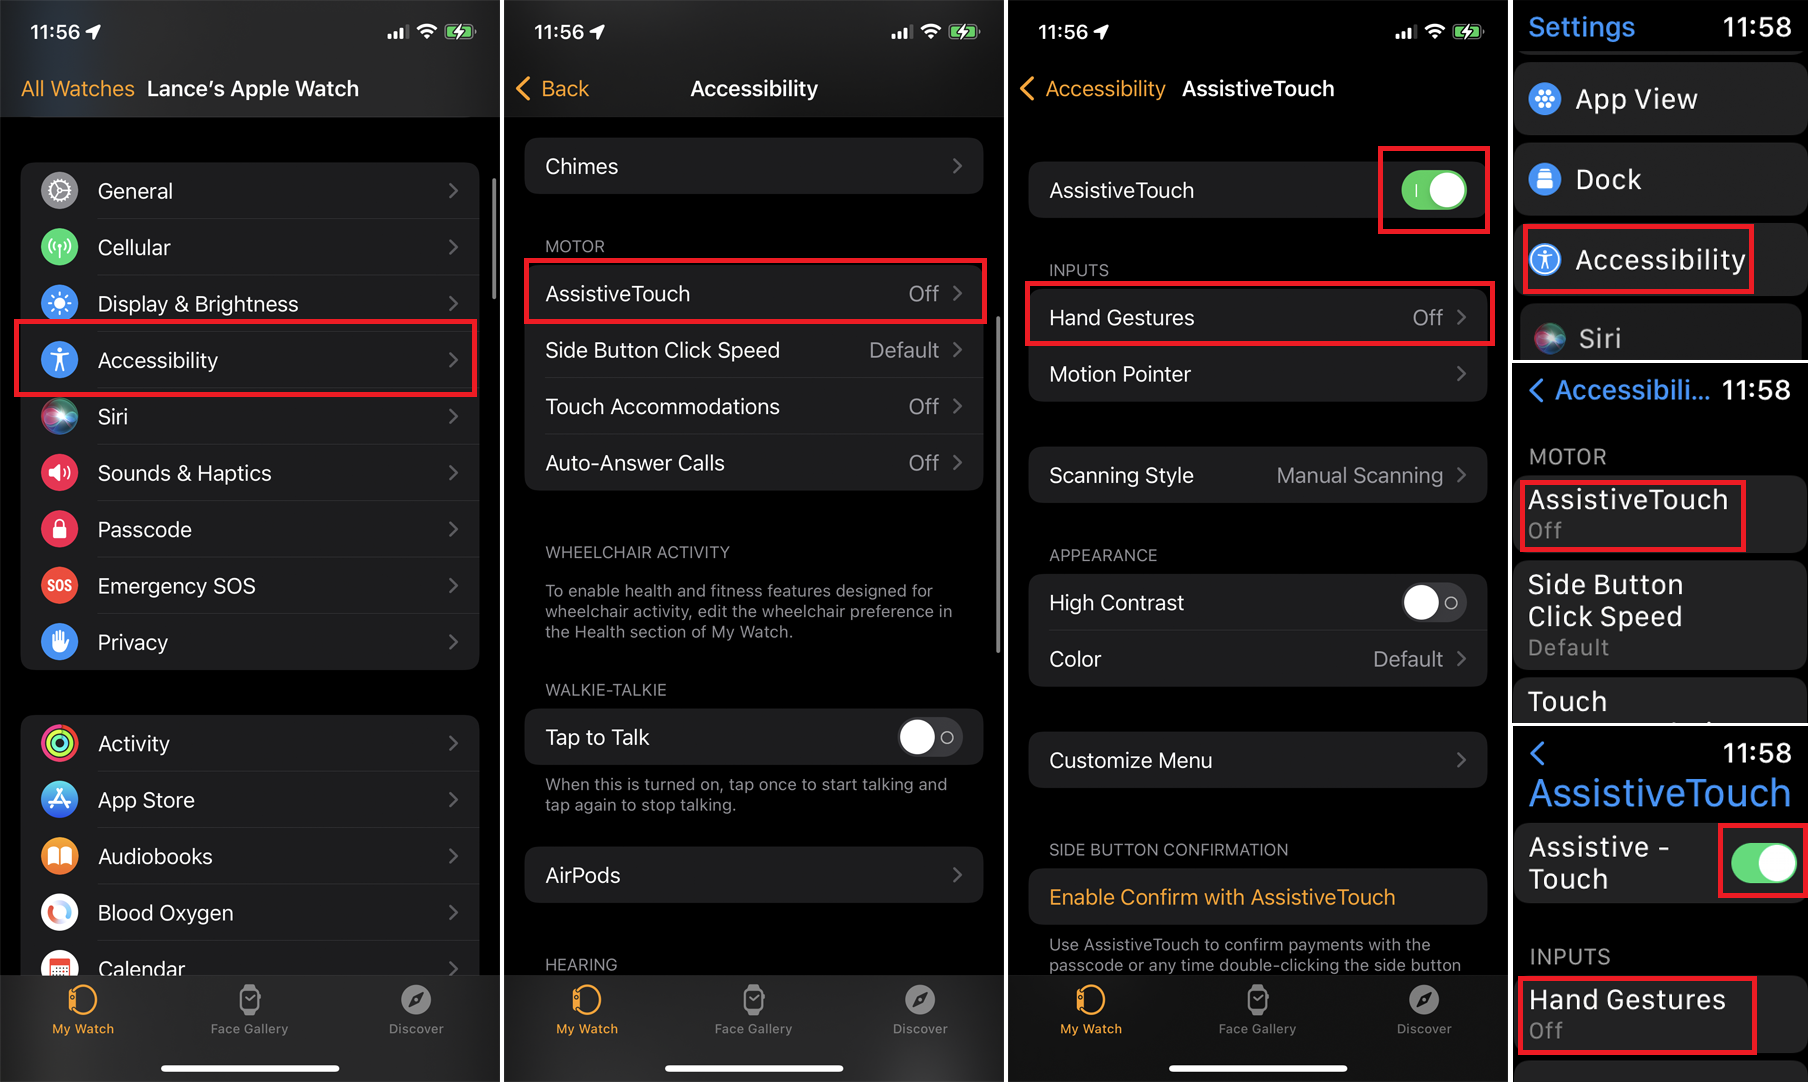 скриншоты меню iPhone и Apple Watch, необходимые для активации Assivetouch